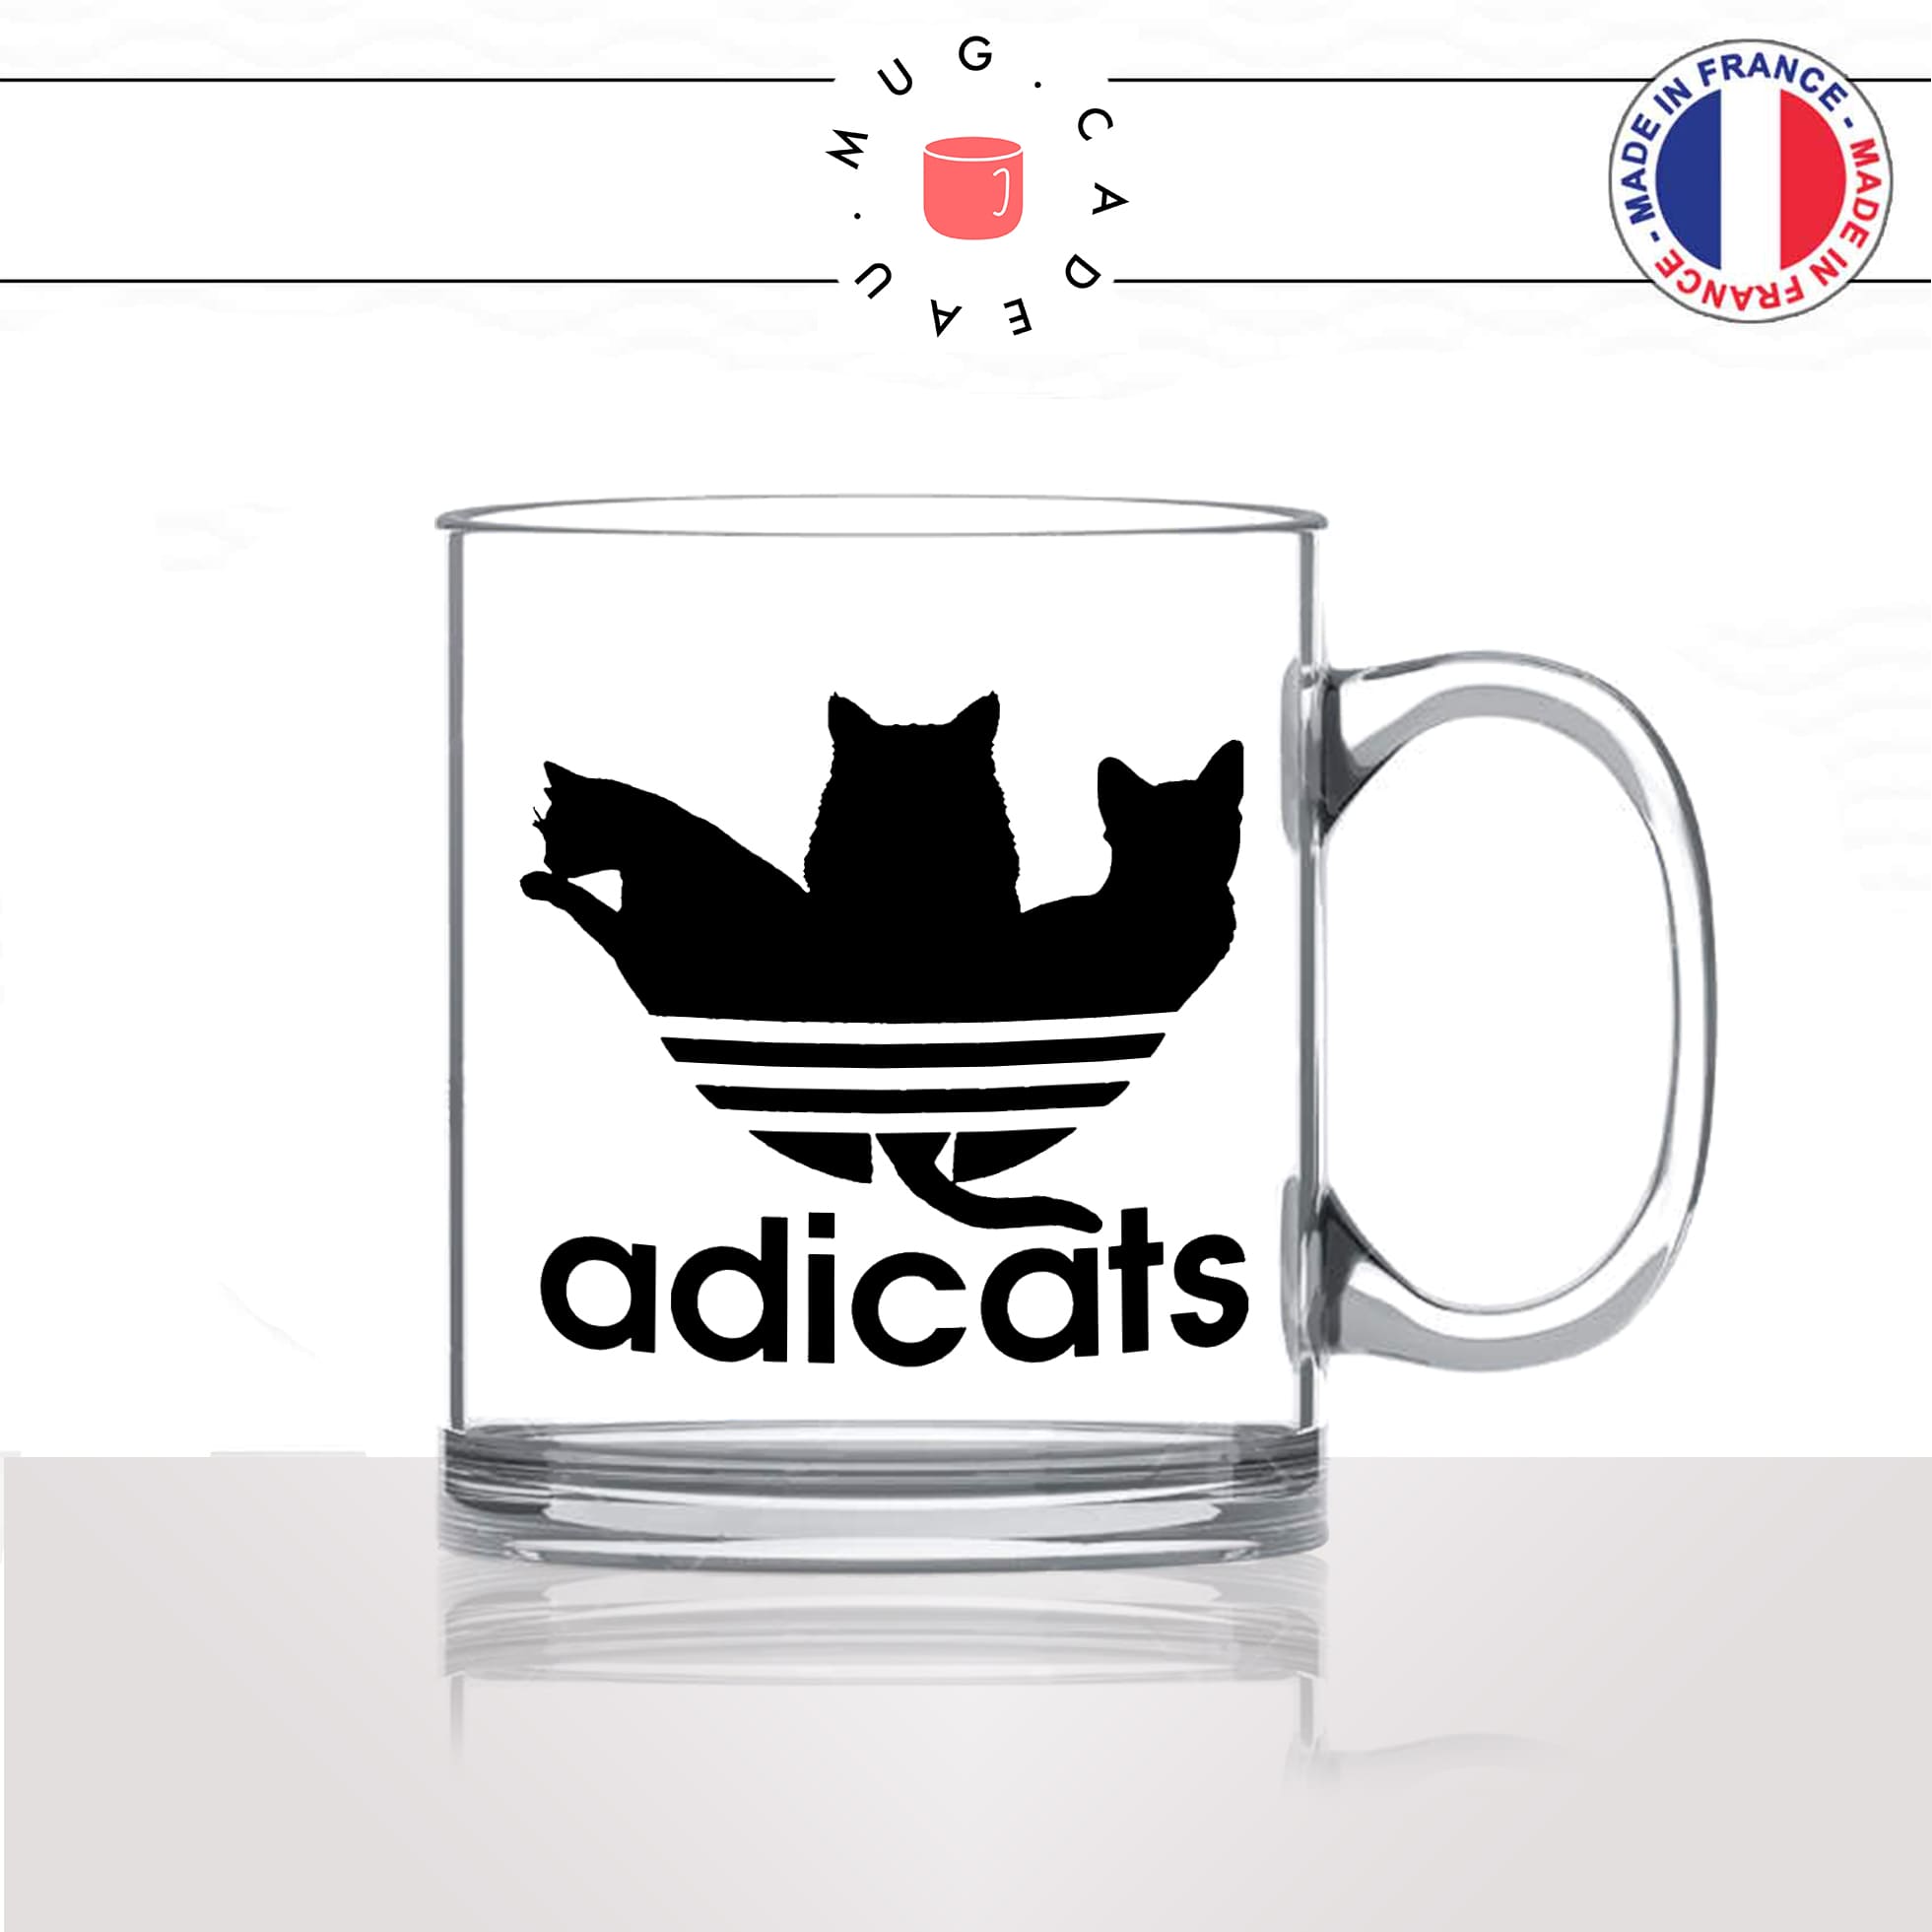 mug-tasse-en-verre-transparent-glass-adicats-chat-chaton-mignon-marque-parodie-homme-femme-humour-fun-cool-idée-cadeau-original2